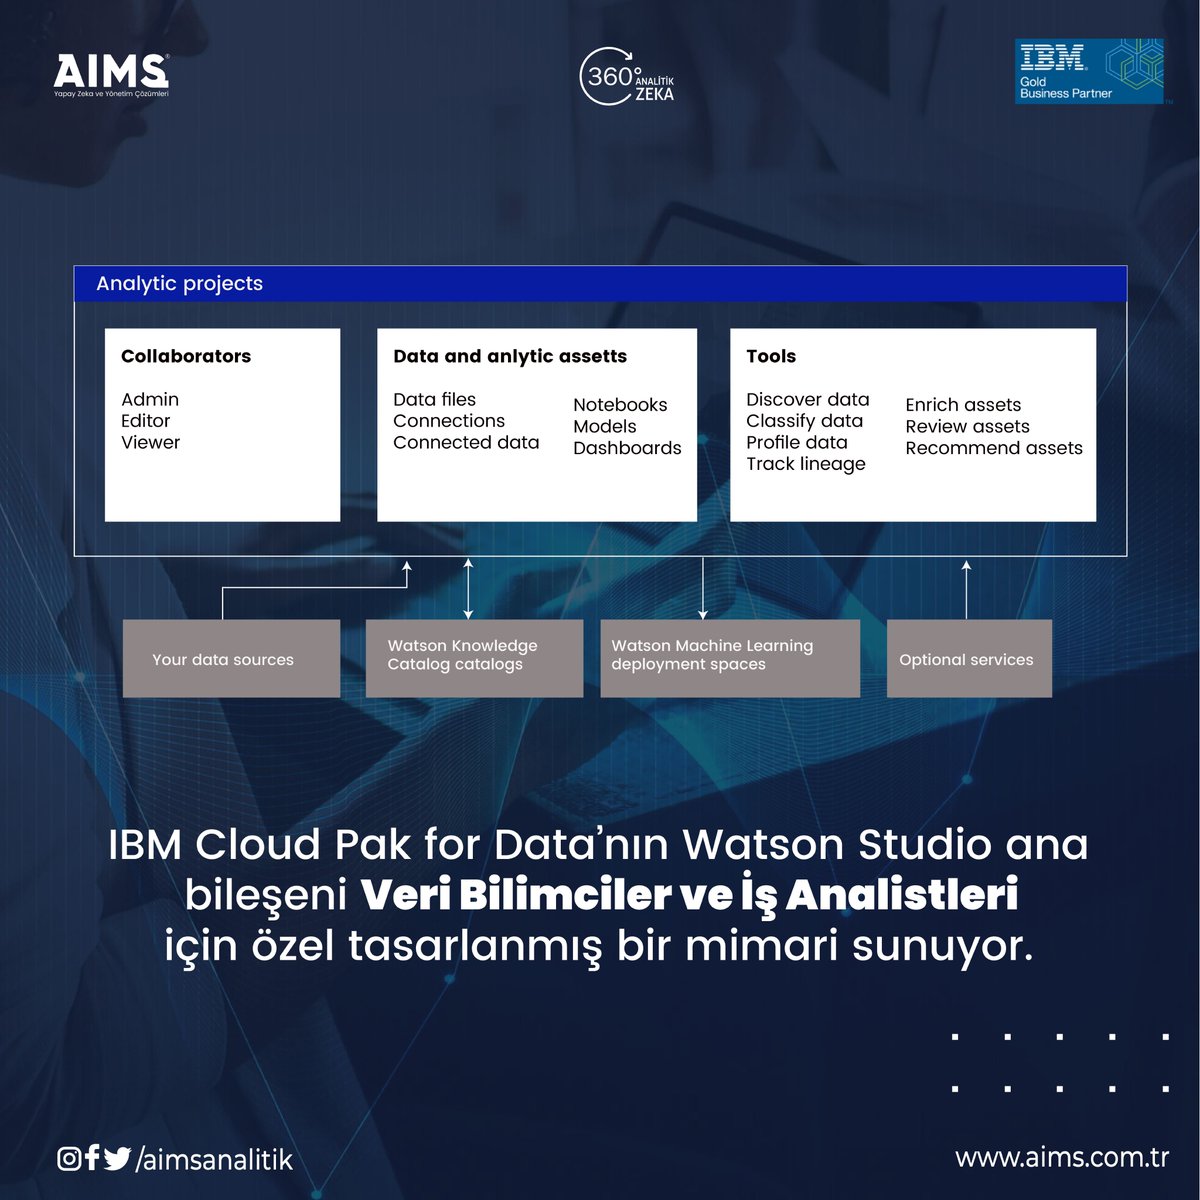 IBM Cloud Pak for Data'nın Watson Studio ana bileşeni Veri Bilimciler ve İş Analistleri için özel tasarlanmış bir mimari sunuyor.

📩 info@aims.com.tr 
🌎 aims.com.tr 

#ibm #yapayzeka #ibmcloudpakfordata #analyze #data #watsonstudio #veribilimi #işanalisti